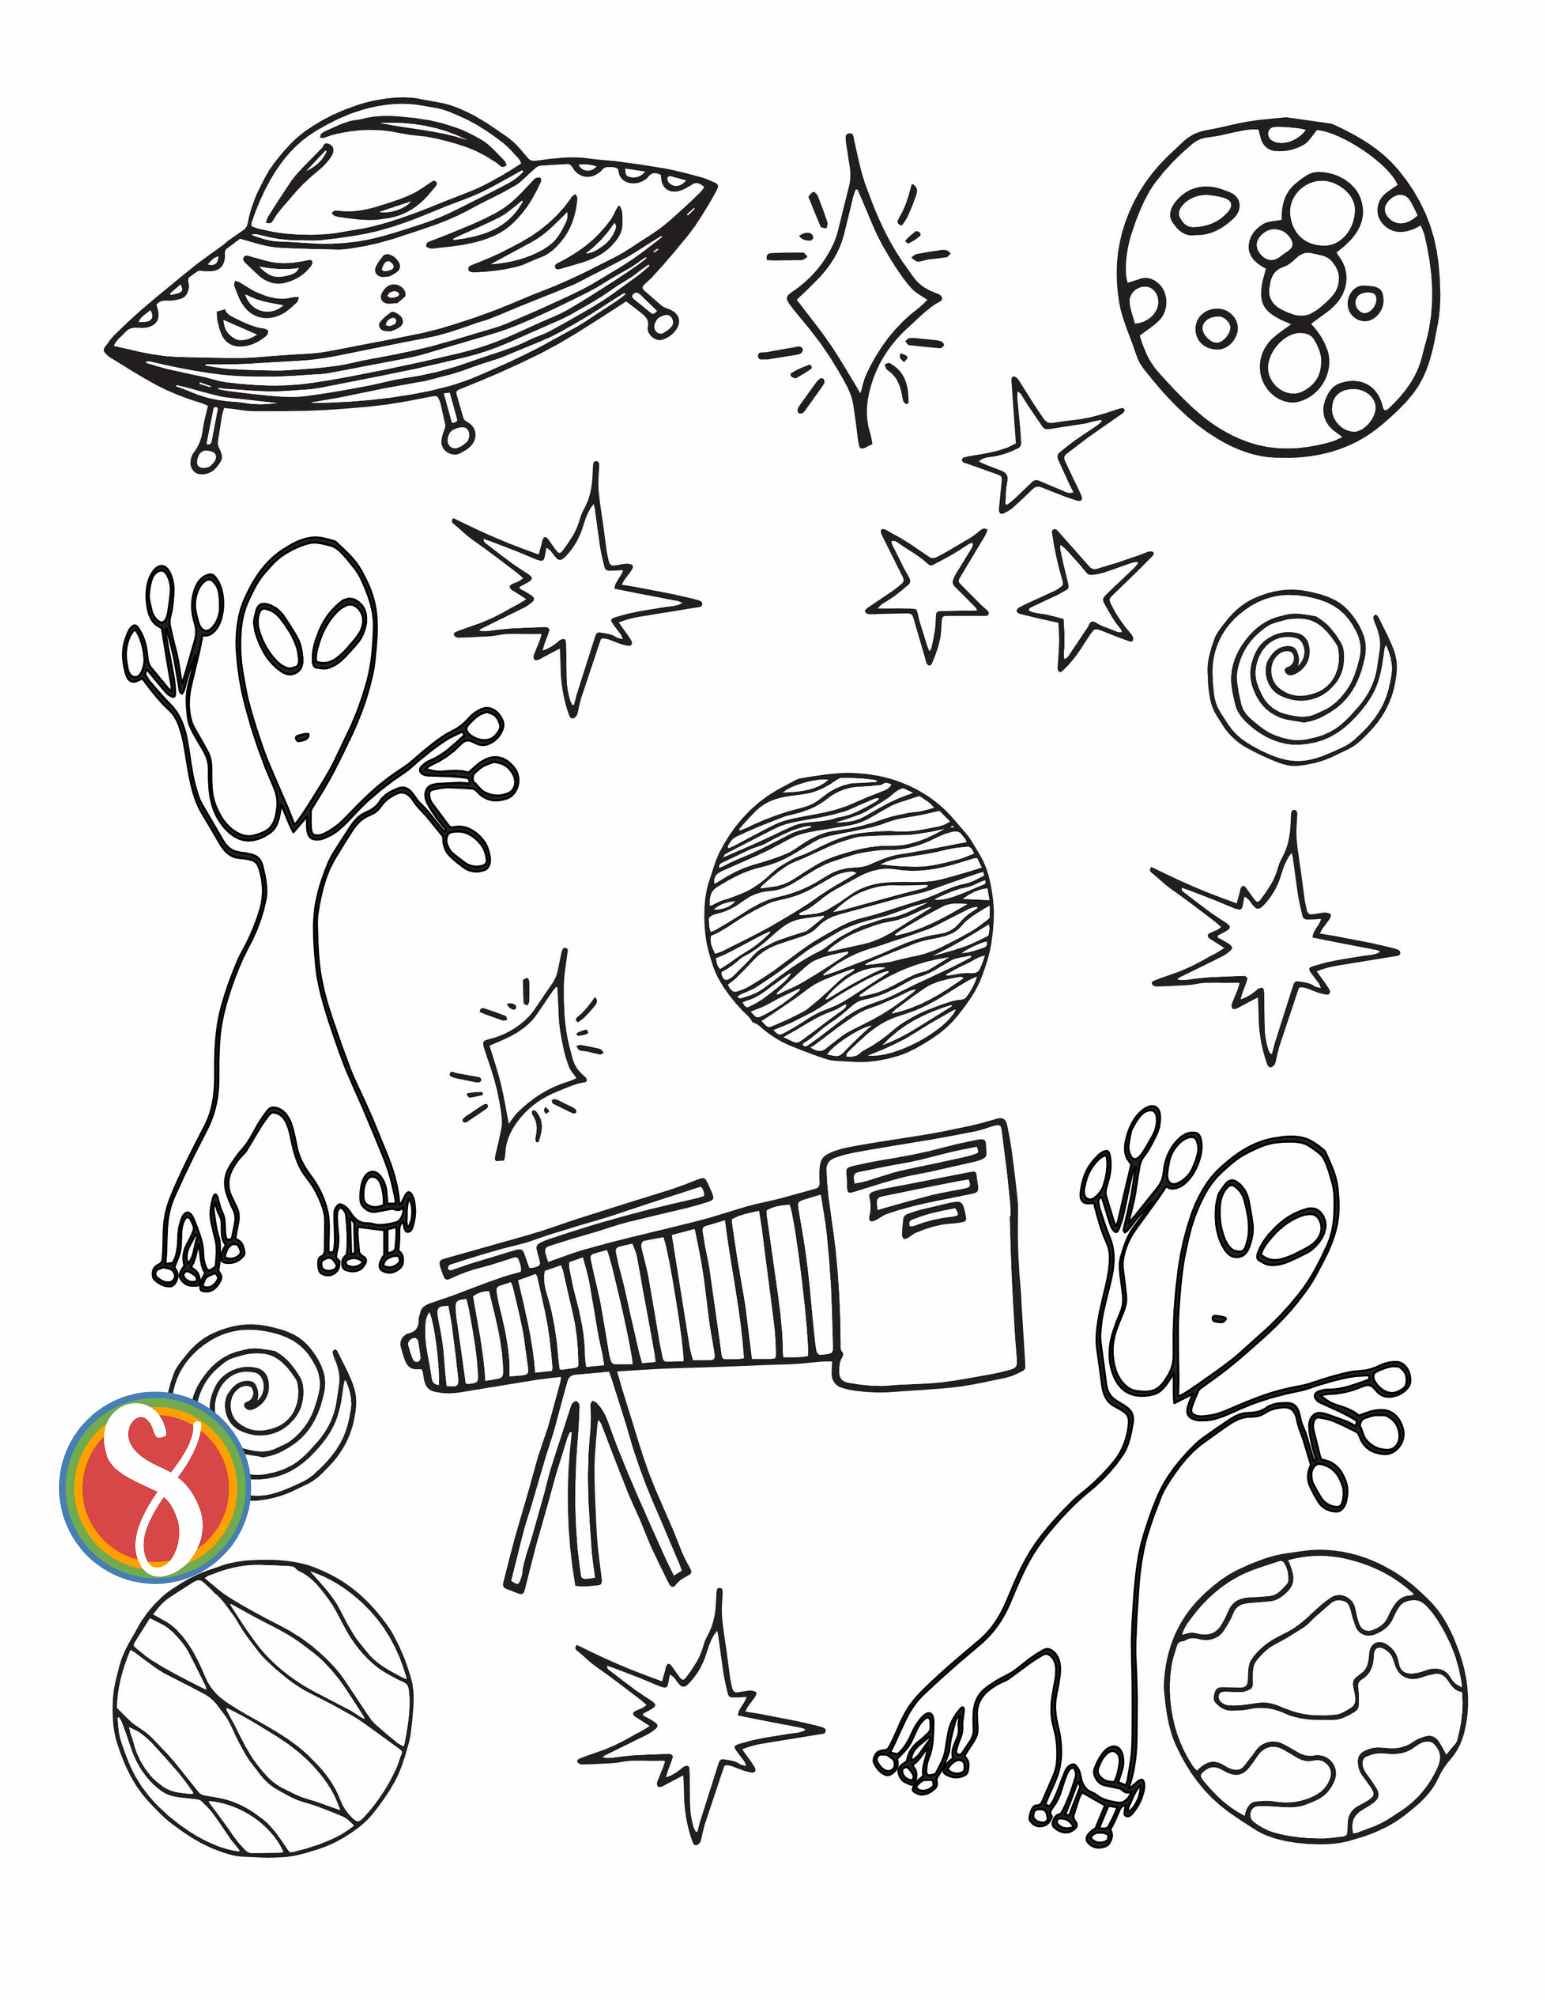 Free alien coloring pages â stevie doodles